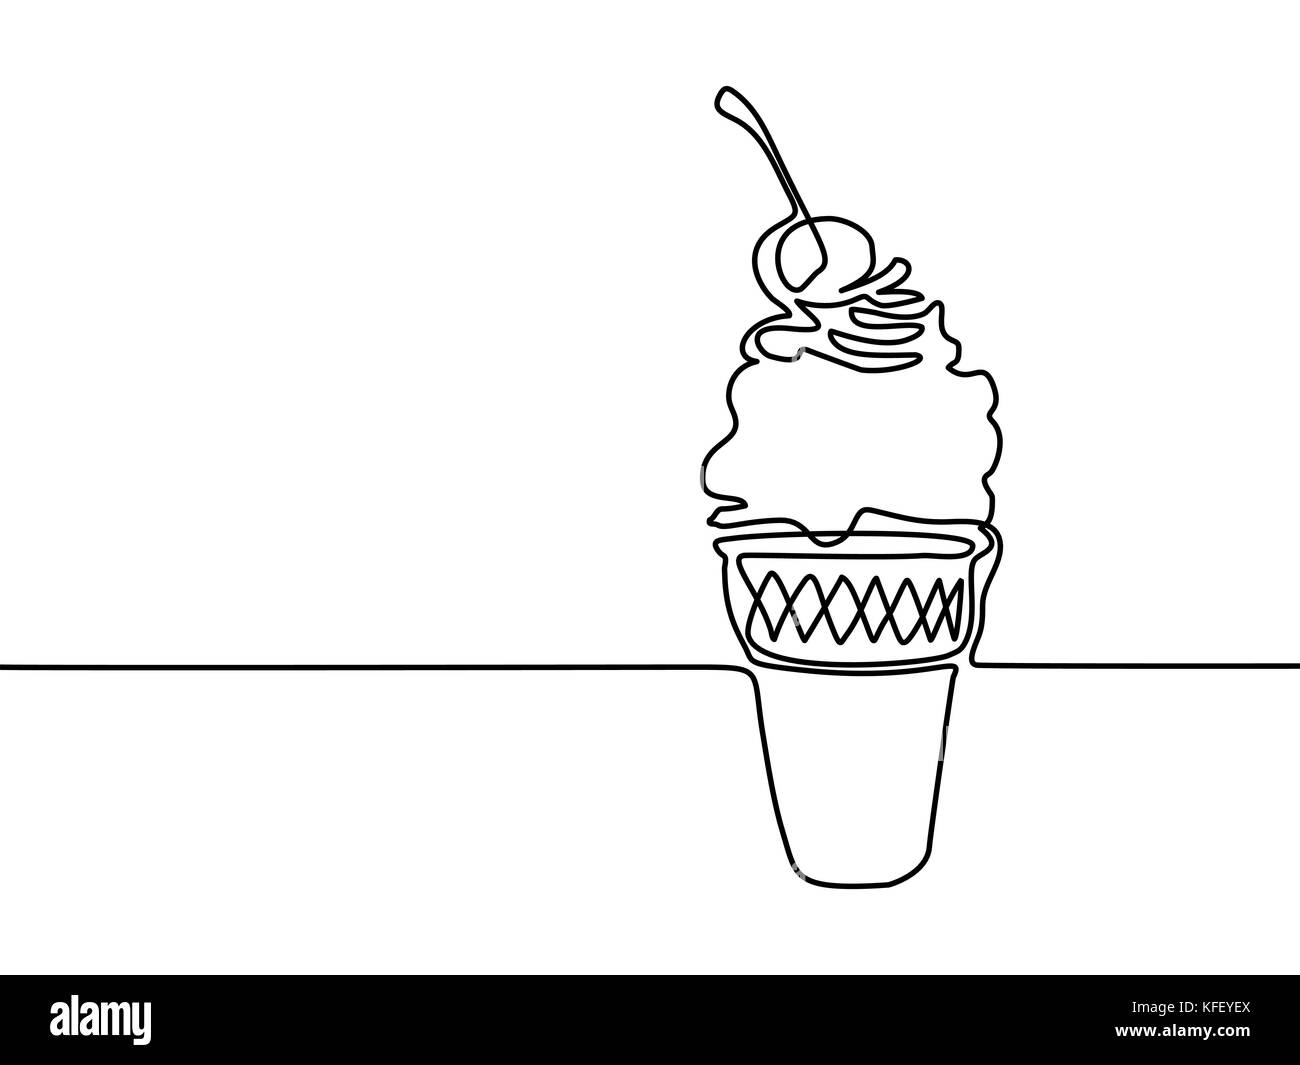 Dessin de ligne continue. La crème glacée dans un cornet gaufré tasse avec cerise. Illustration vecteur ligne noire sur fond blanc. Illustration de Vecteur